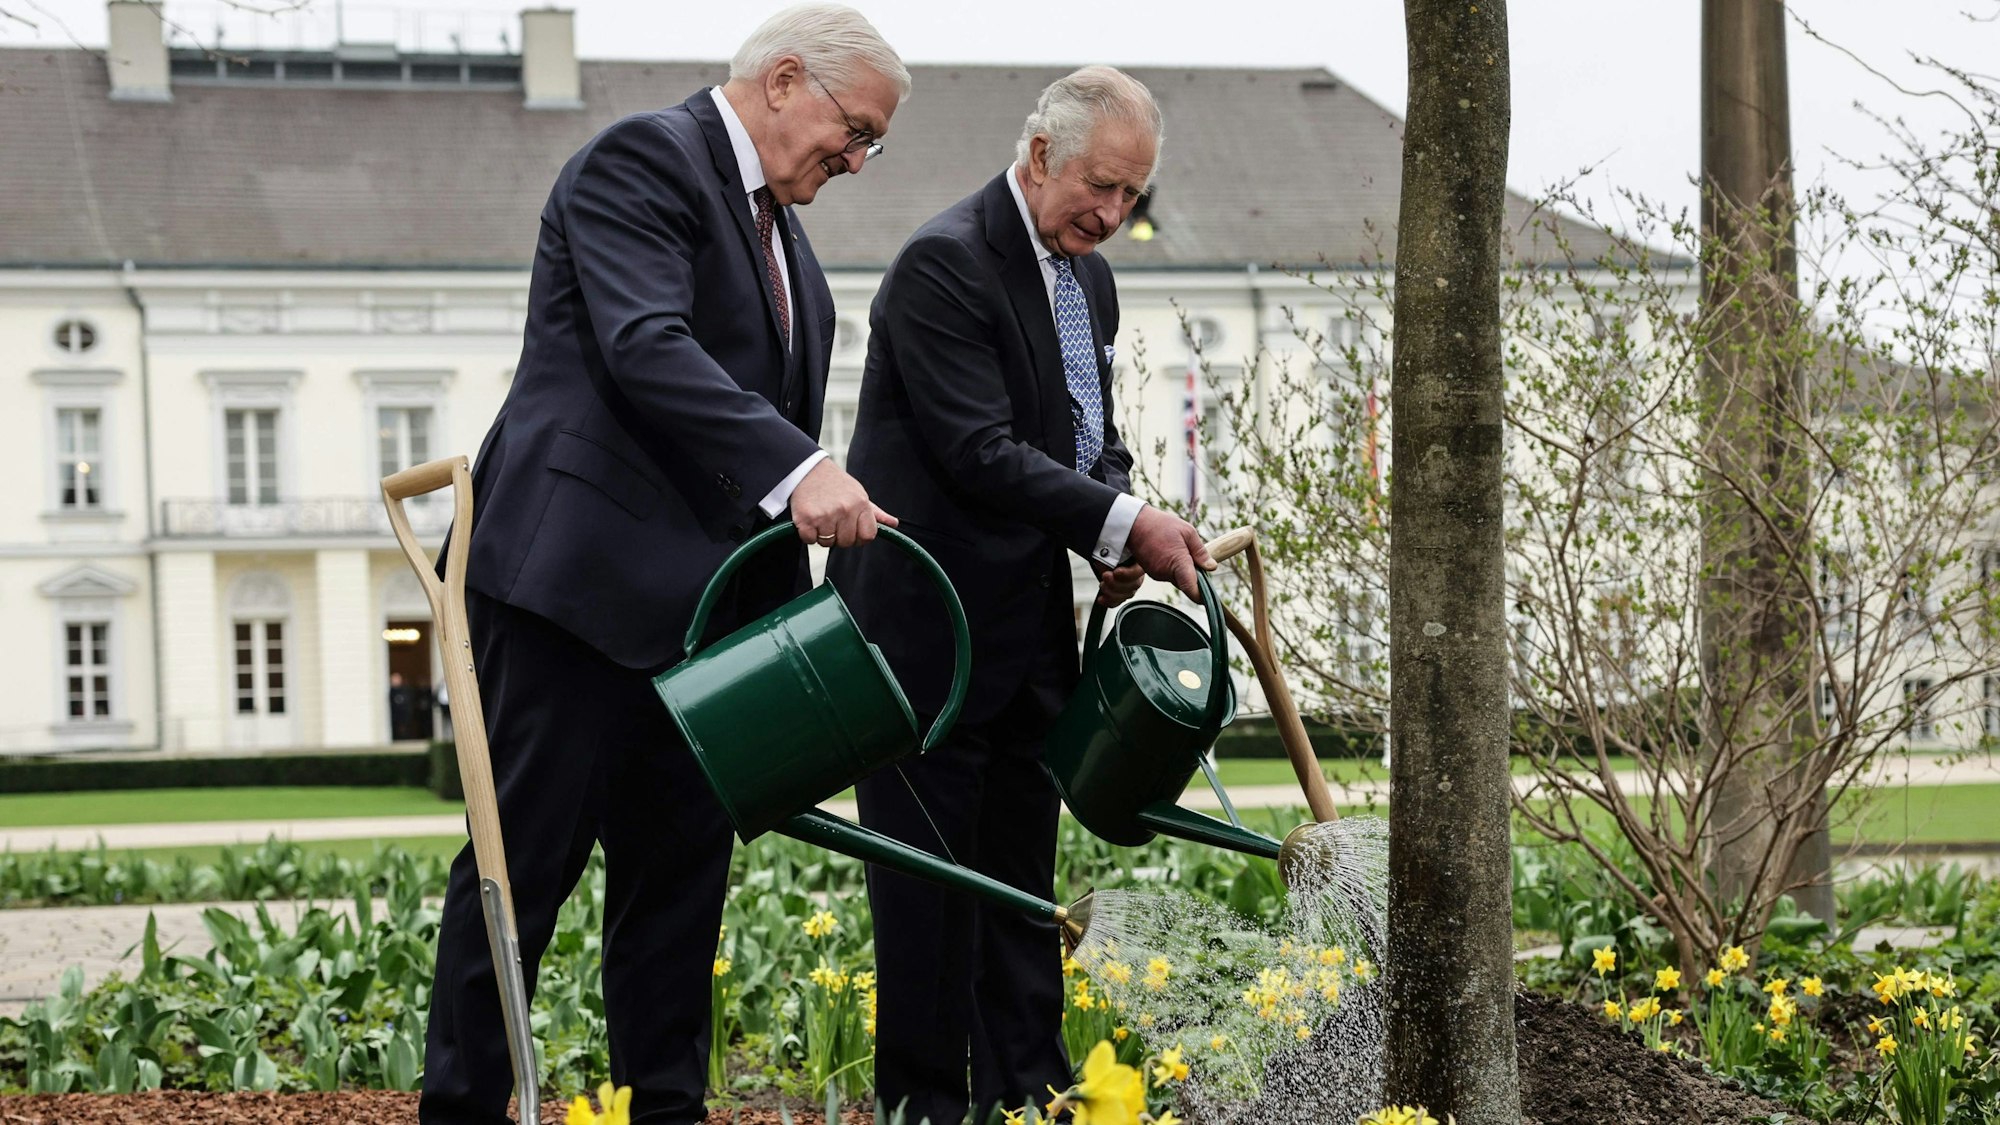 König Charles III (r.) und Bundespräsident Frank-Walter Steinmeier gießen gemeinsam Bäume und Blumen am Schloss Bellevue.AFP